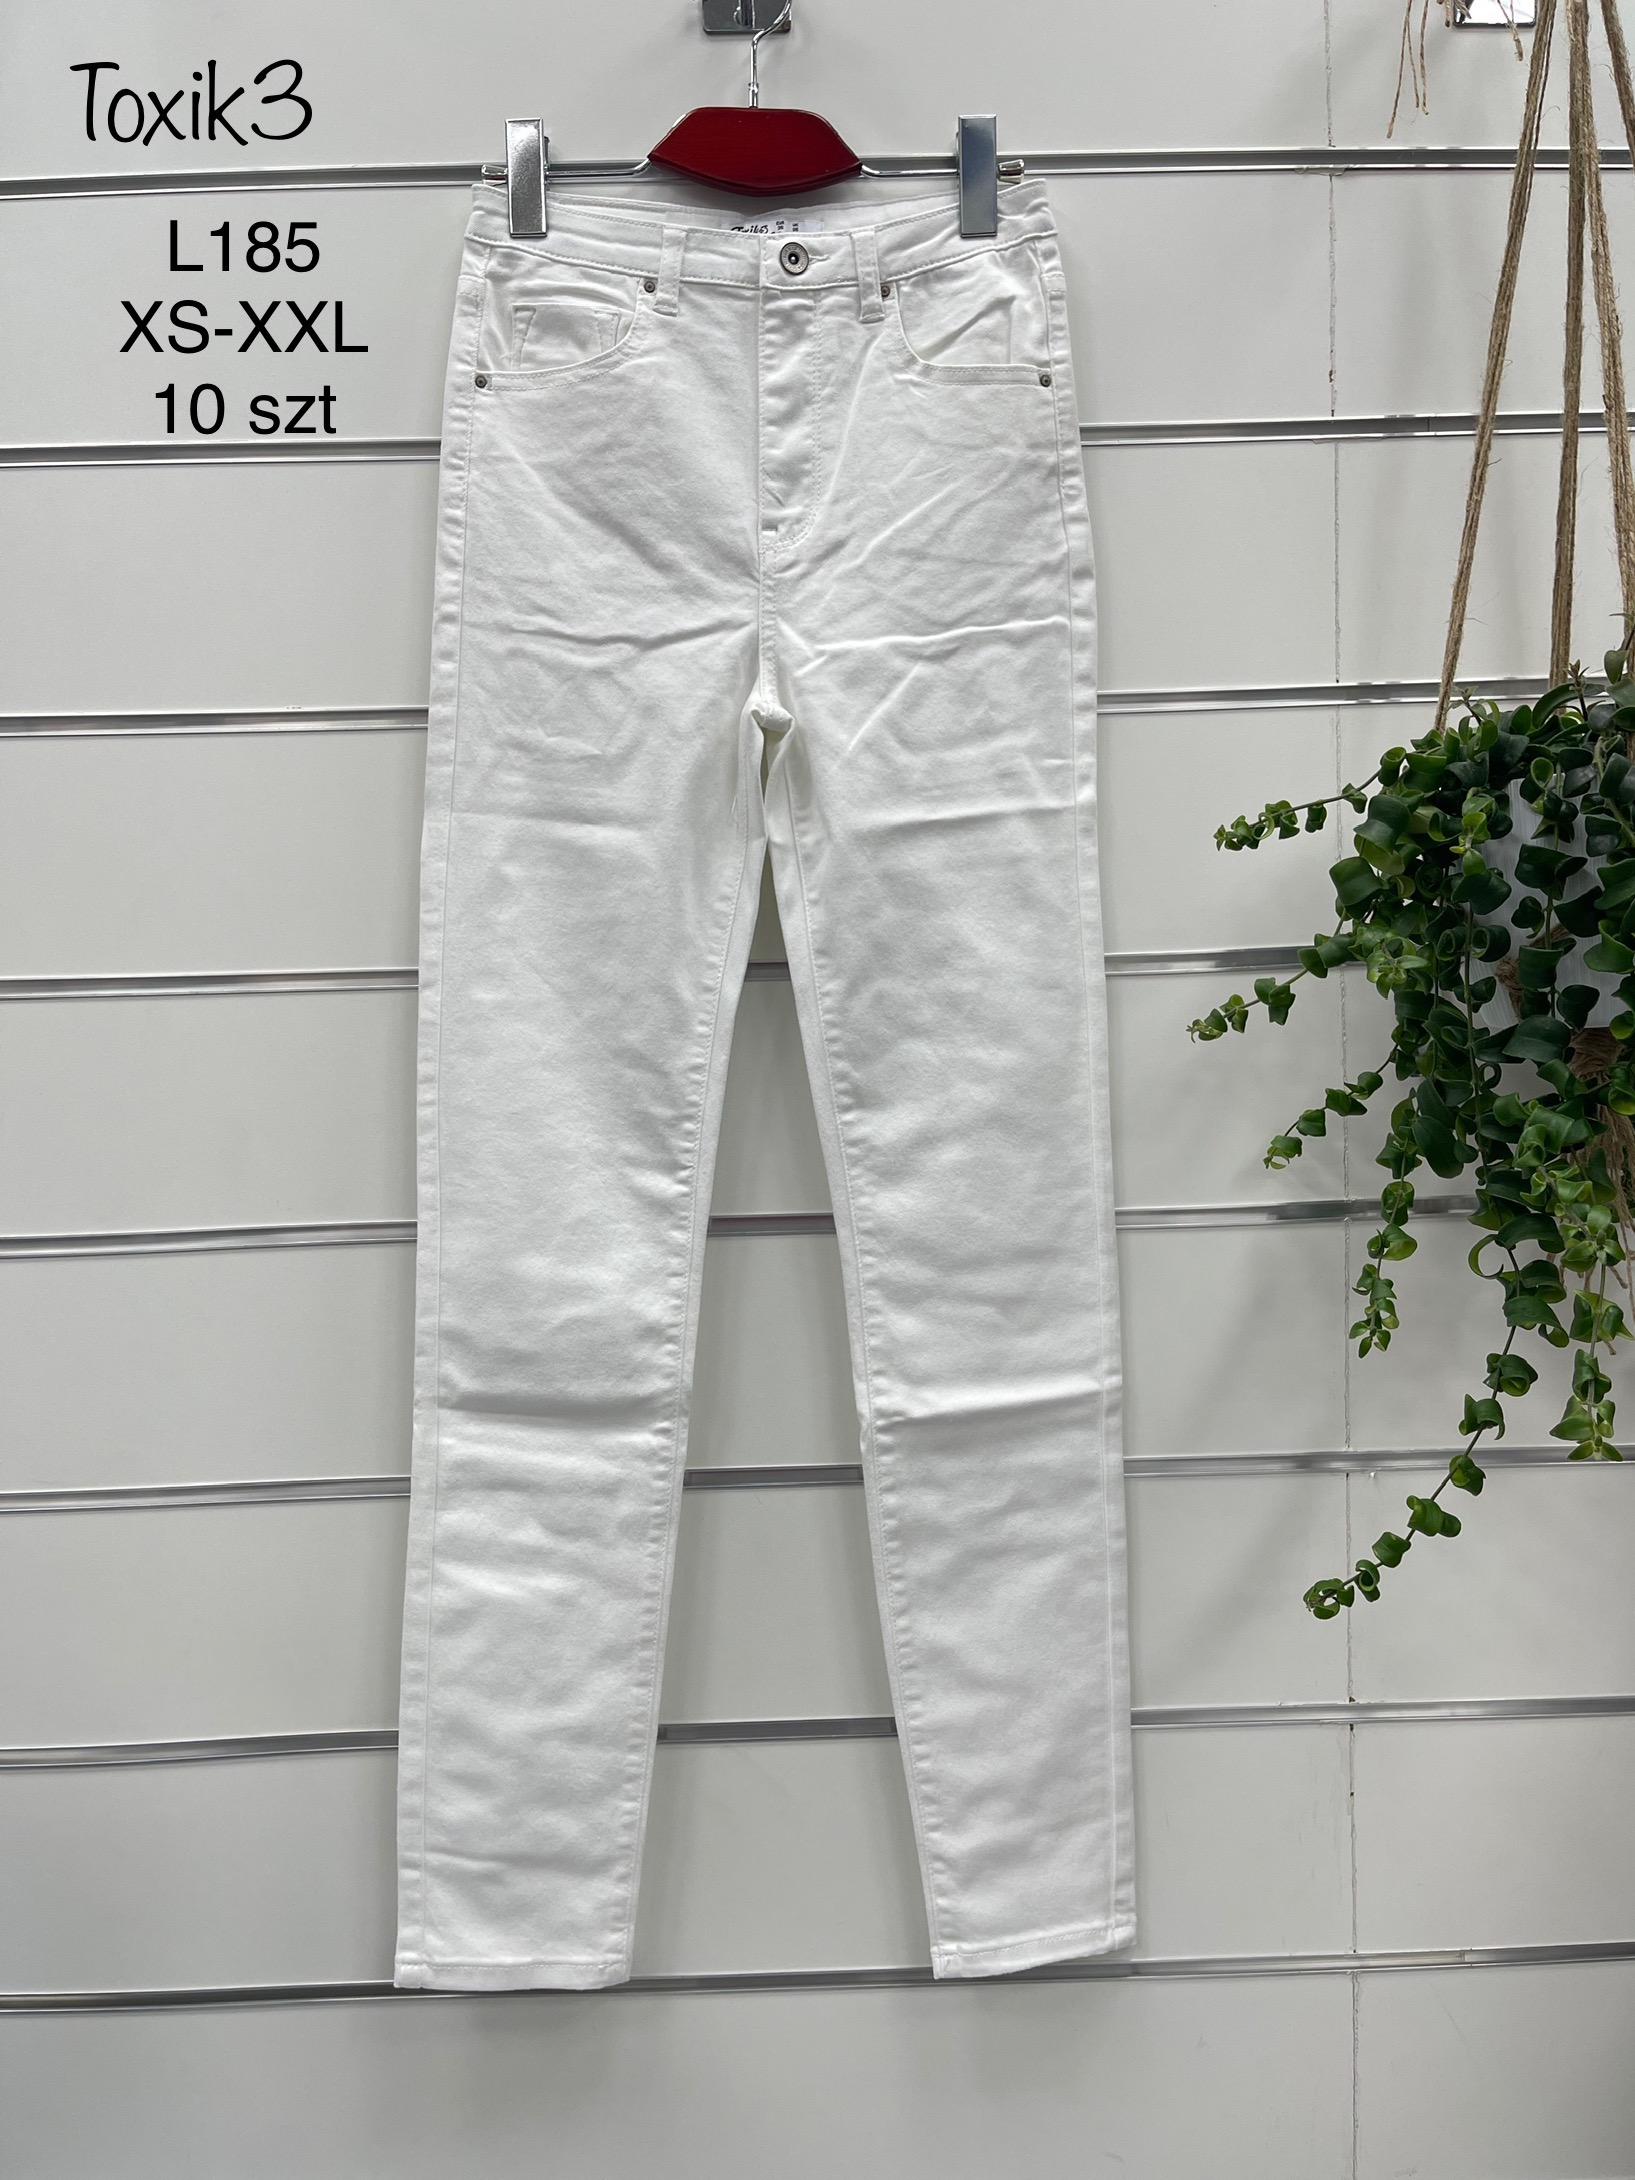 Spodnie damskie jeans Roz  XS-XL.  1 kolor . Paczka 10szt